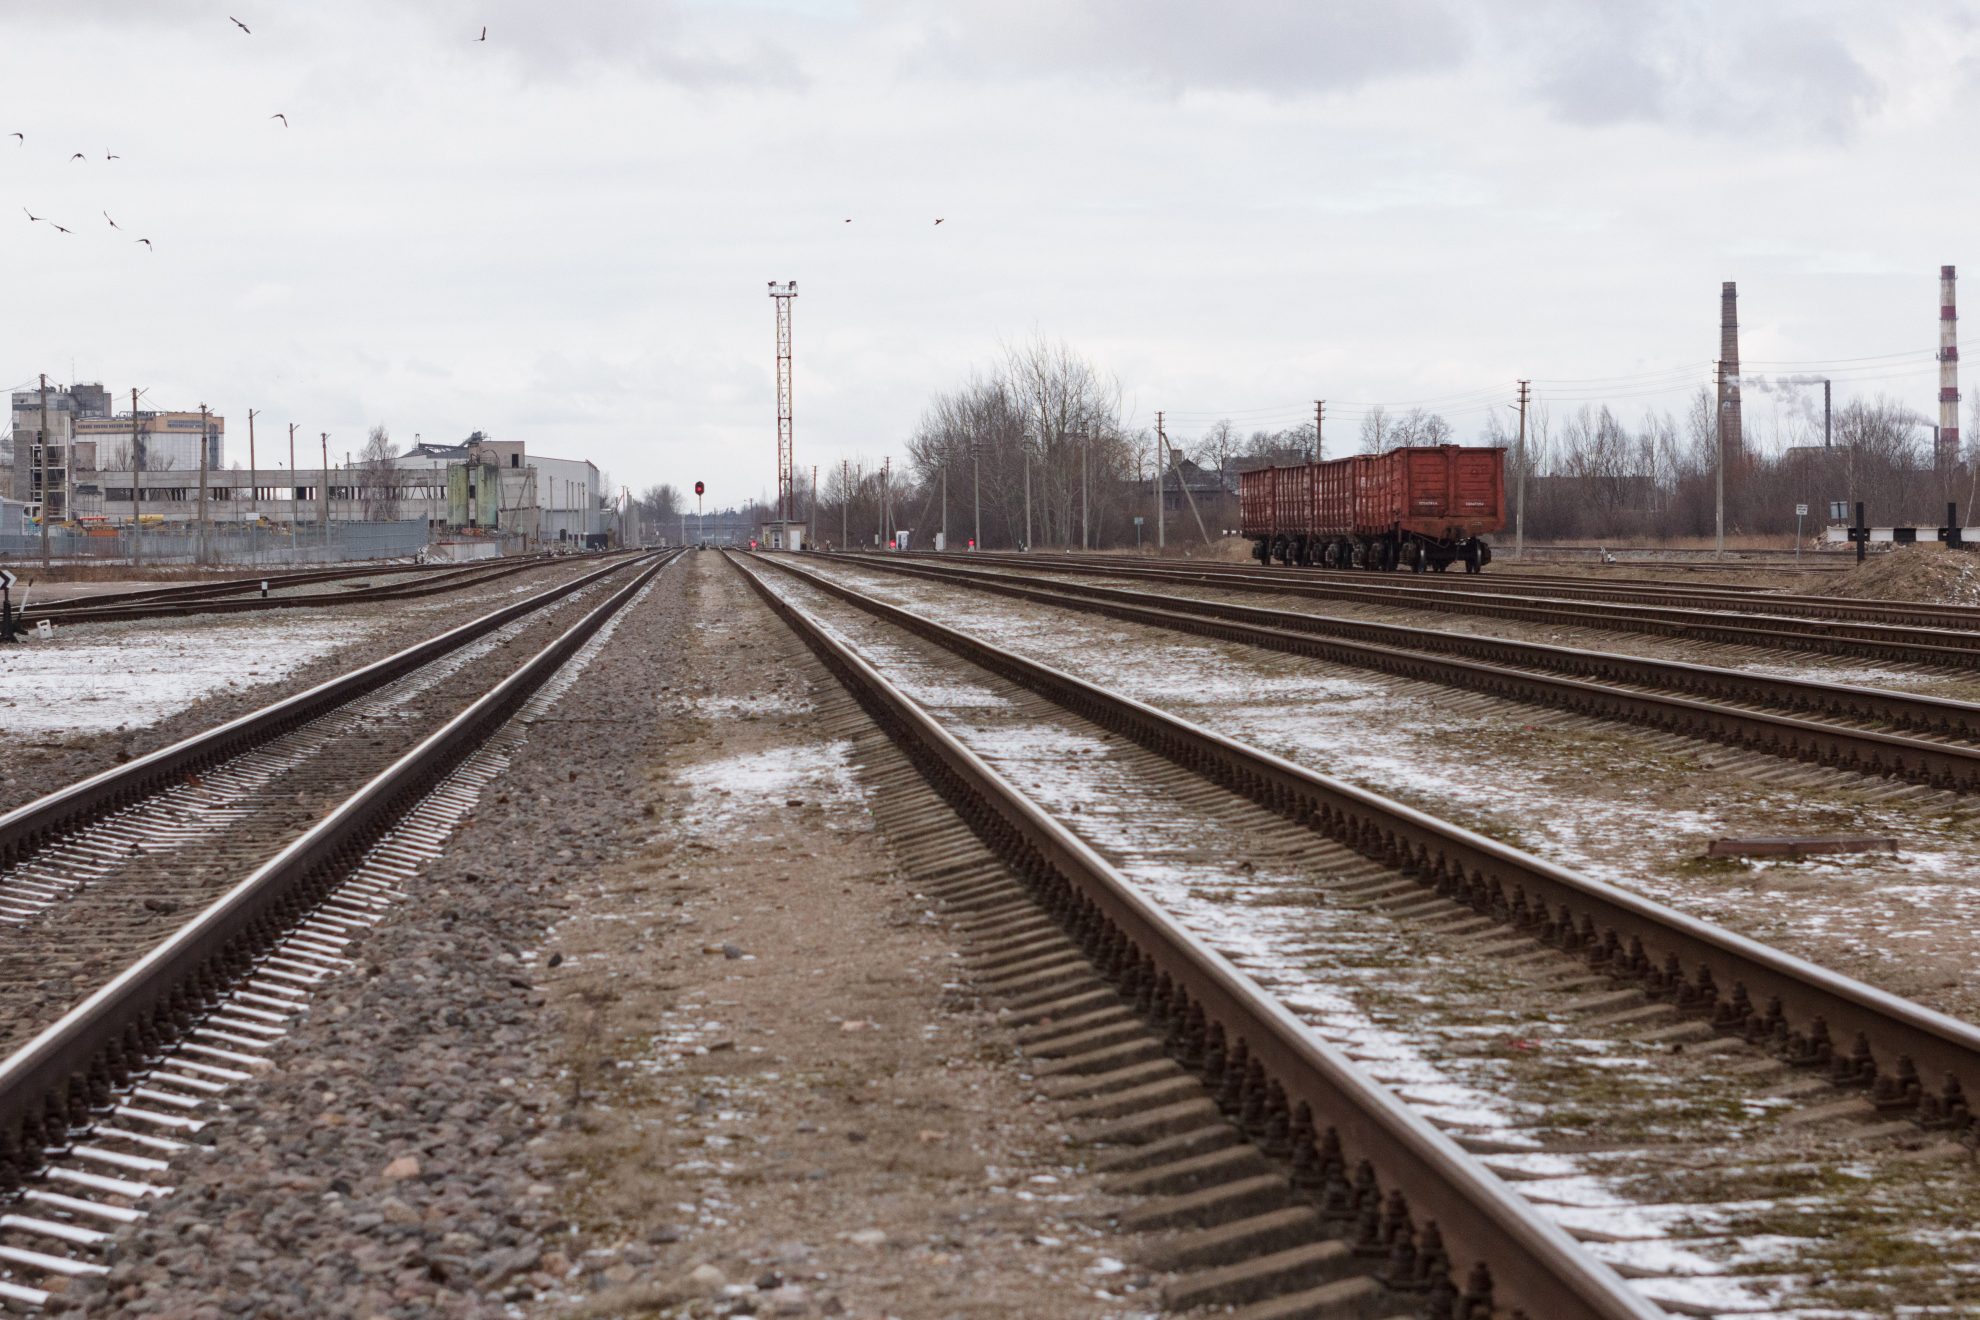 Susisiekimo ministerija sudarė galimybes ūkininkams laikinai naudotis visuomenės poreikiams išpirkta žeme, kurioje bus tiesiamas „Rail Baltica“ geležinkelis ir su juo susiję automobilių keliai. Nacionalinė žemės tarnyba informuota, kad nuo Kauno iki projektinio geležinkelio linijos 96,9 km ūkininkai galės naudotis žeme iki 2021 m. sausio 1 d., o nuo šio taško iki Lietuvos ir Latvijos sienos žemę dirbti bus galima iki 2022 m. sausio 1-osios.